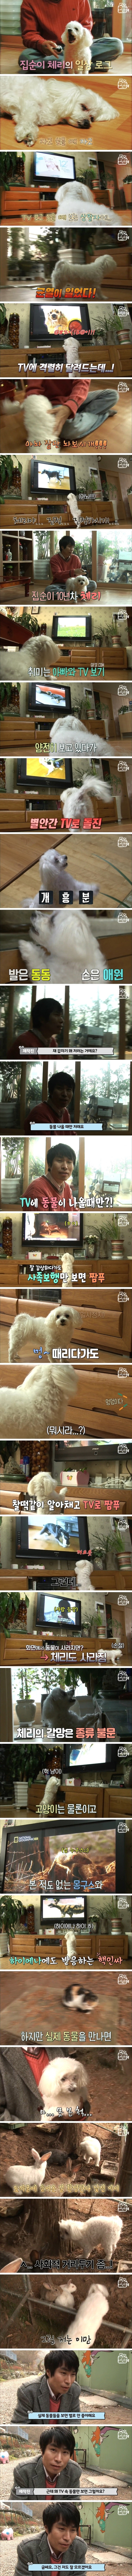 동물만 나오면 TV에 돌진하는 강아지 (1).jpg